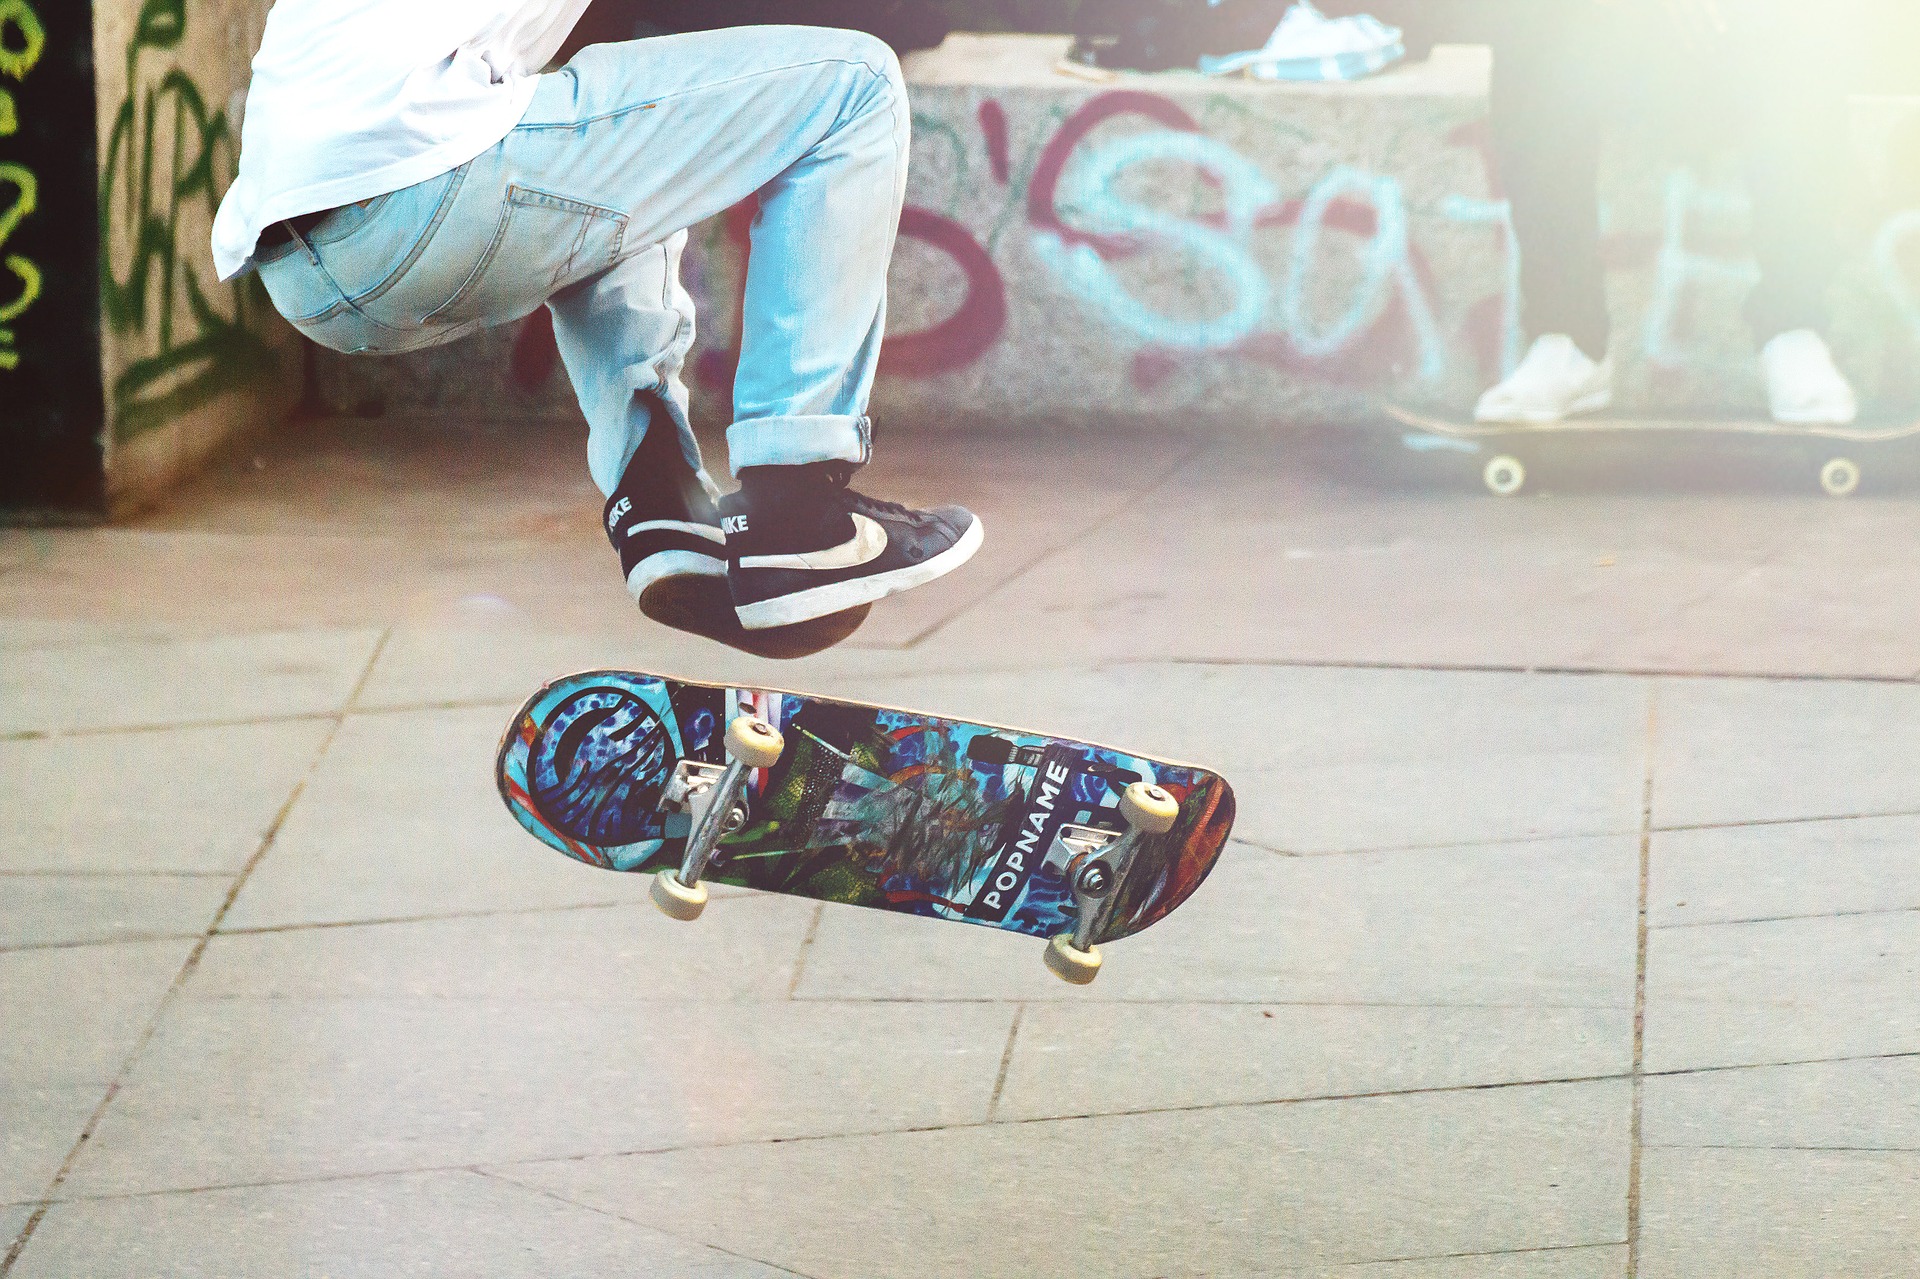 skateboarder-2373728_1920